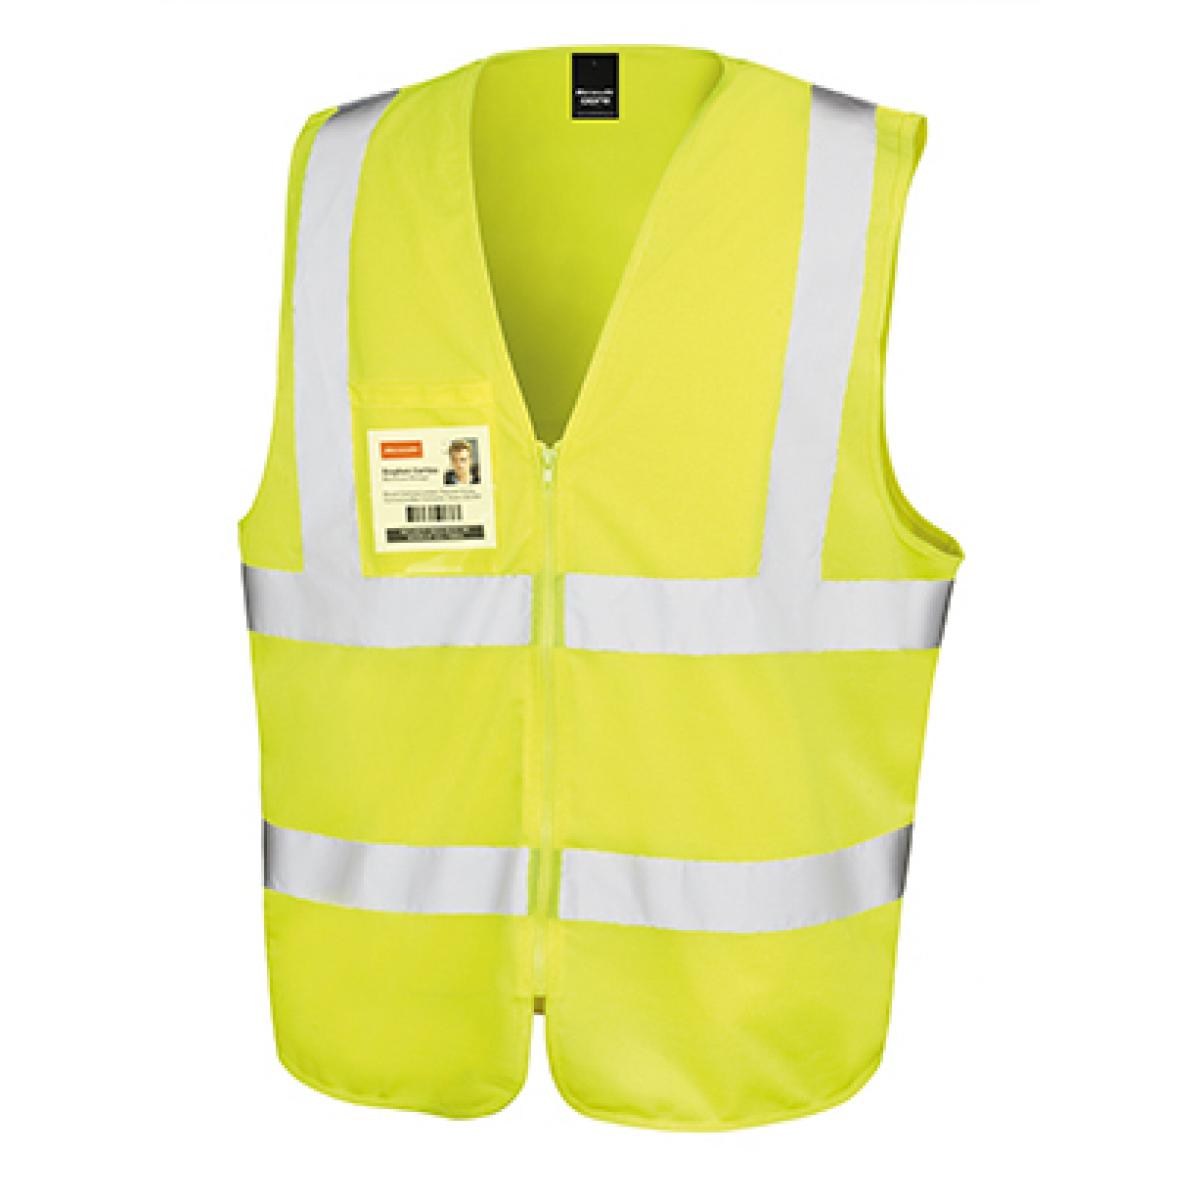 Hersteller: Result Core Herstellernummer: R202X Artikelbezeichnung: Herren Core Zip Safety Tabard / EN20471 Klasse 2 Farbe: Fluorescent Yellow